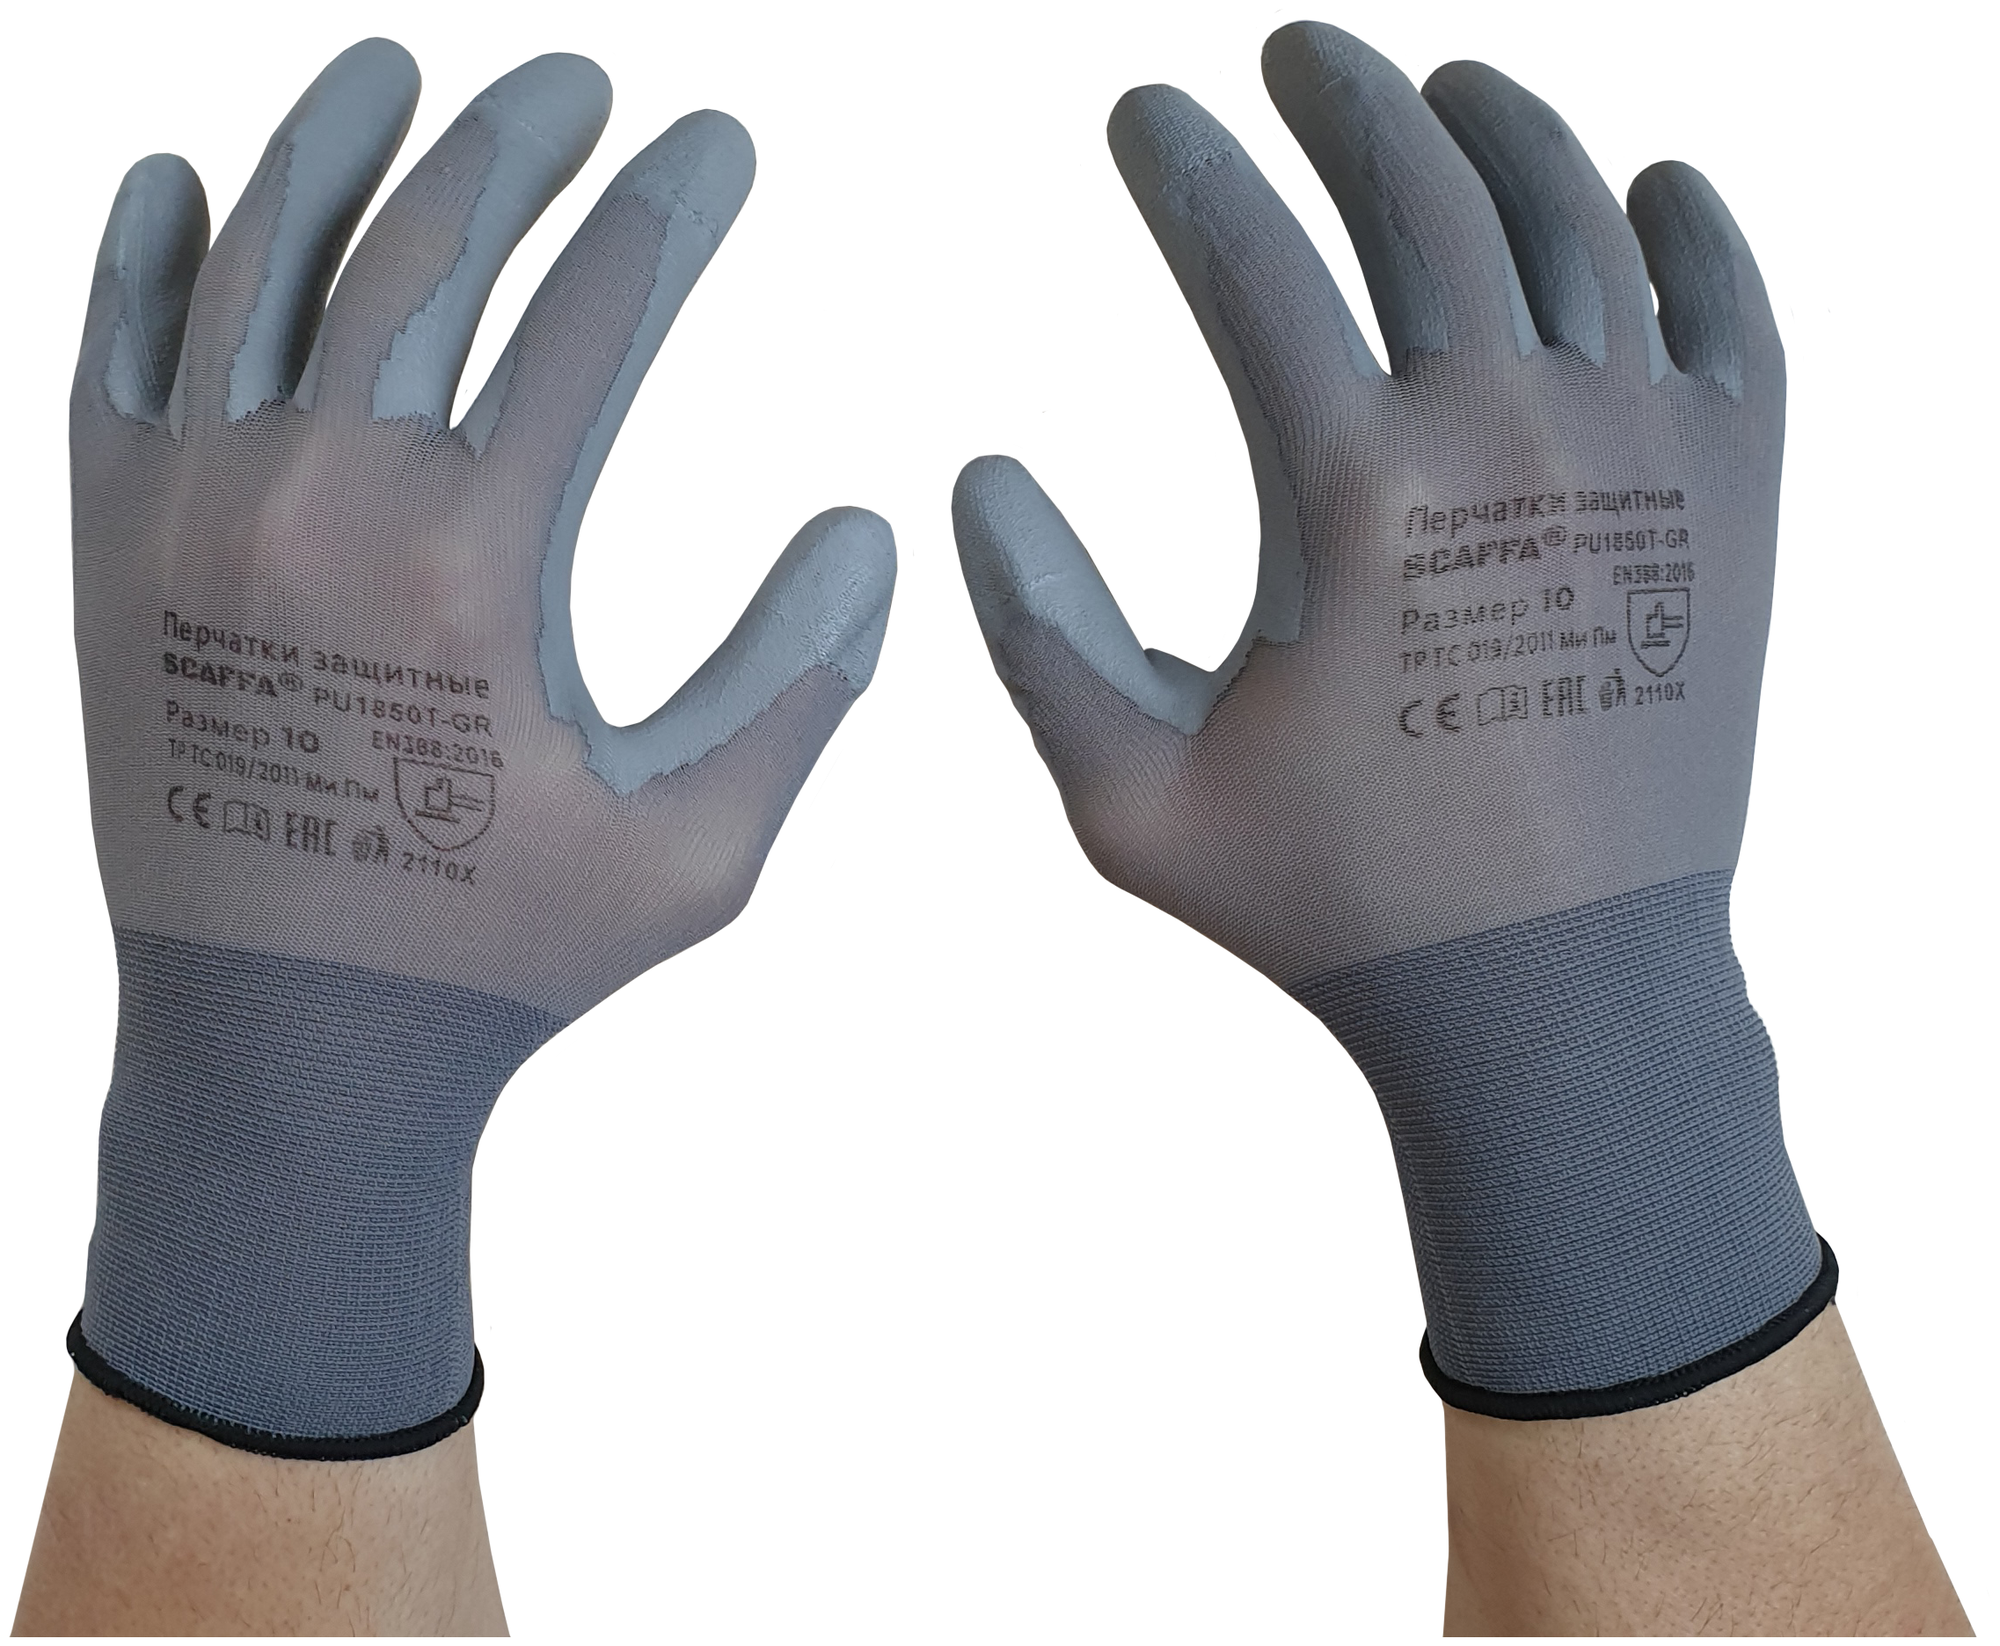 Перчатки для защиты от механических воздействий PU1850T-GR SCAFFA